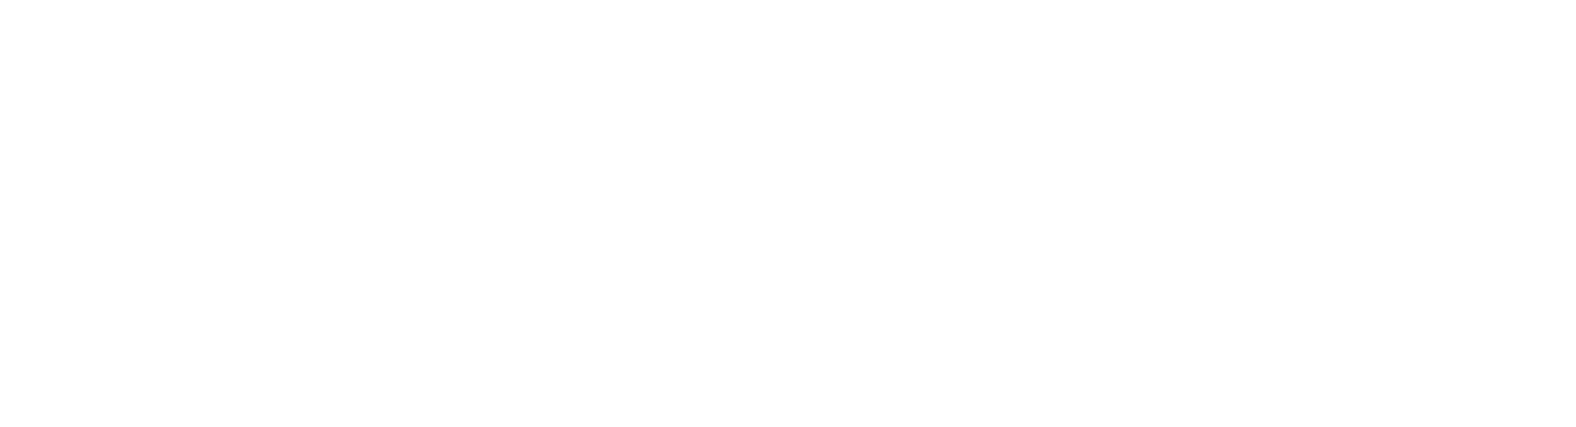 Swisscom AG partner badge